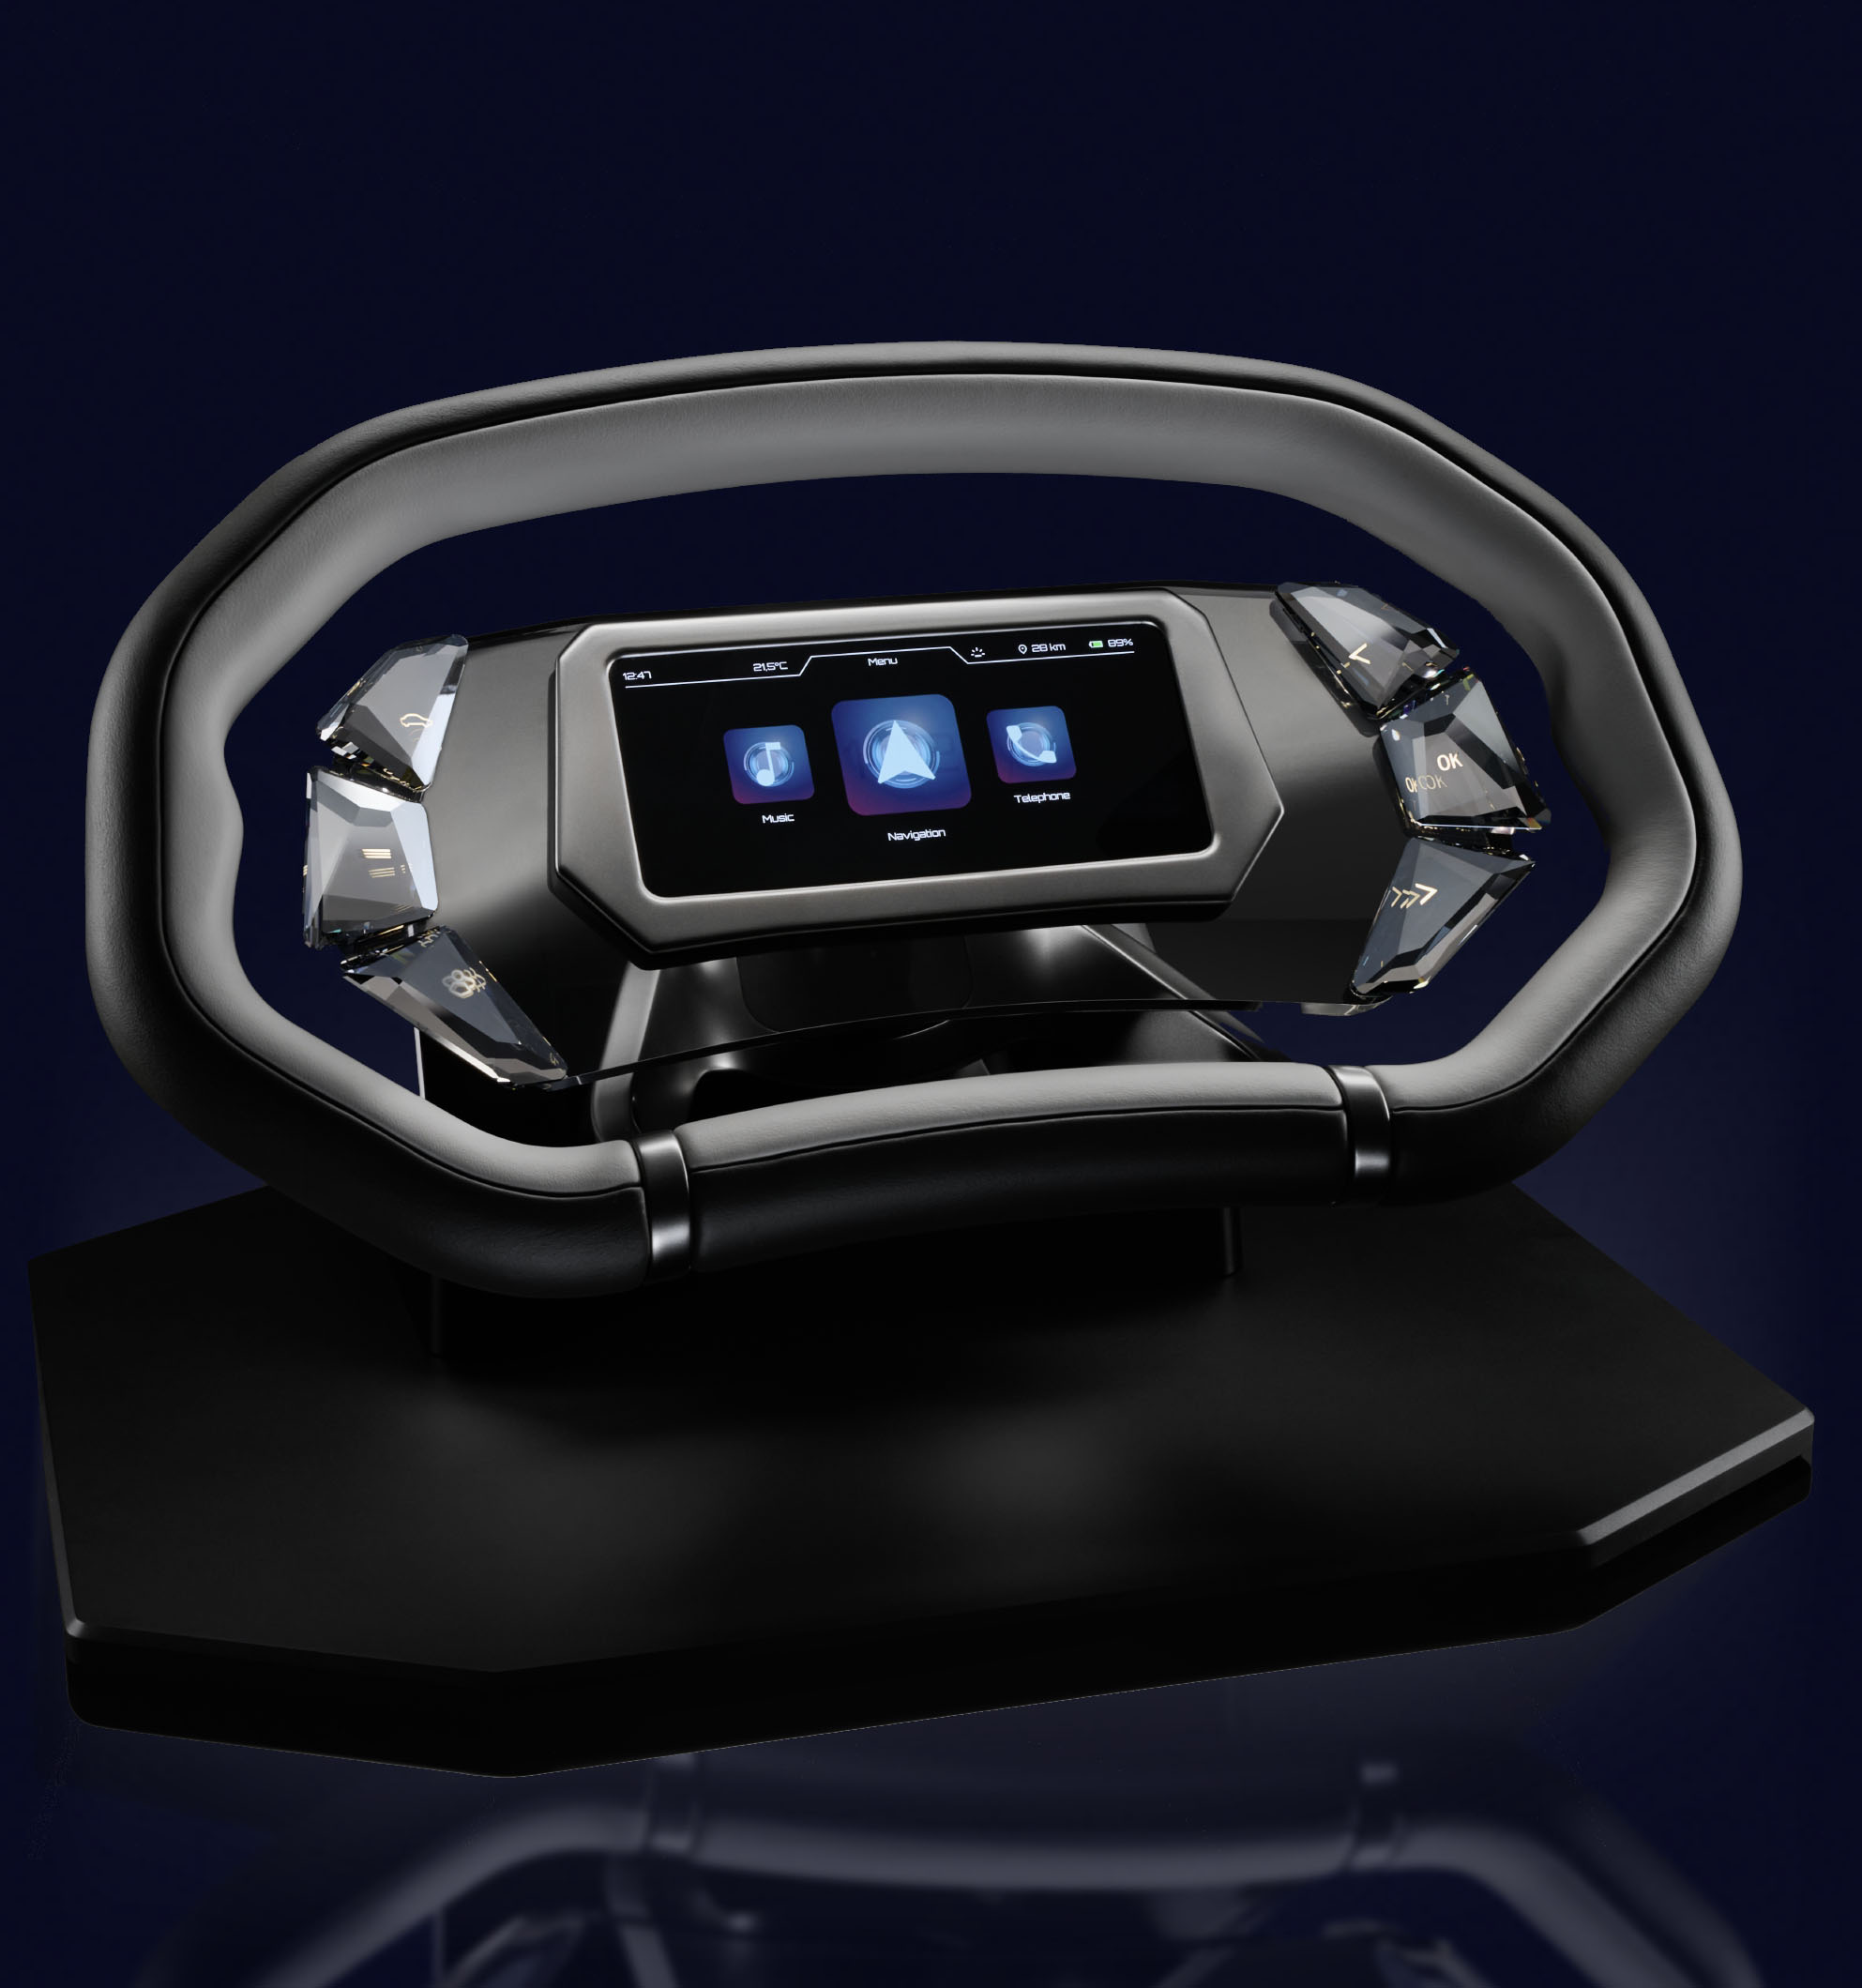 Steering wheel futuristic black car interior equipment